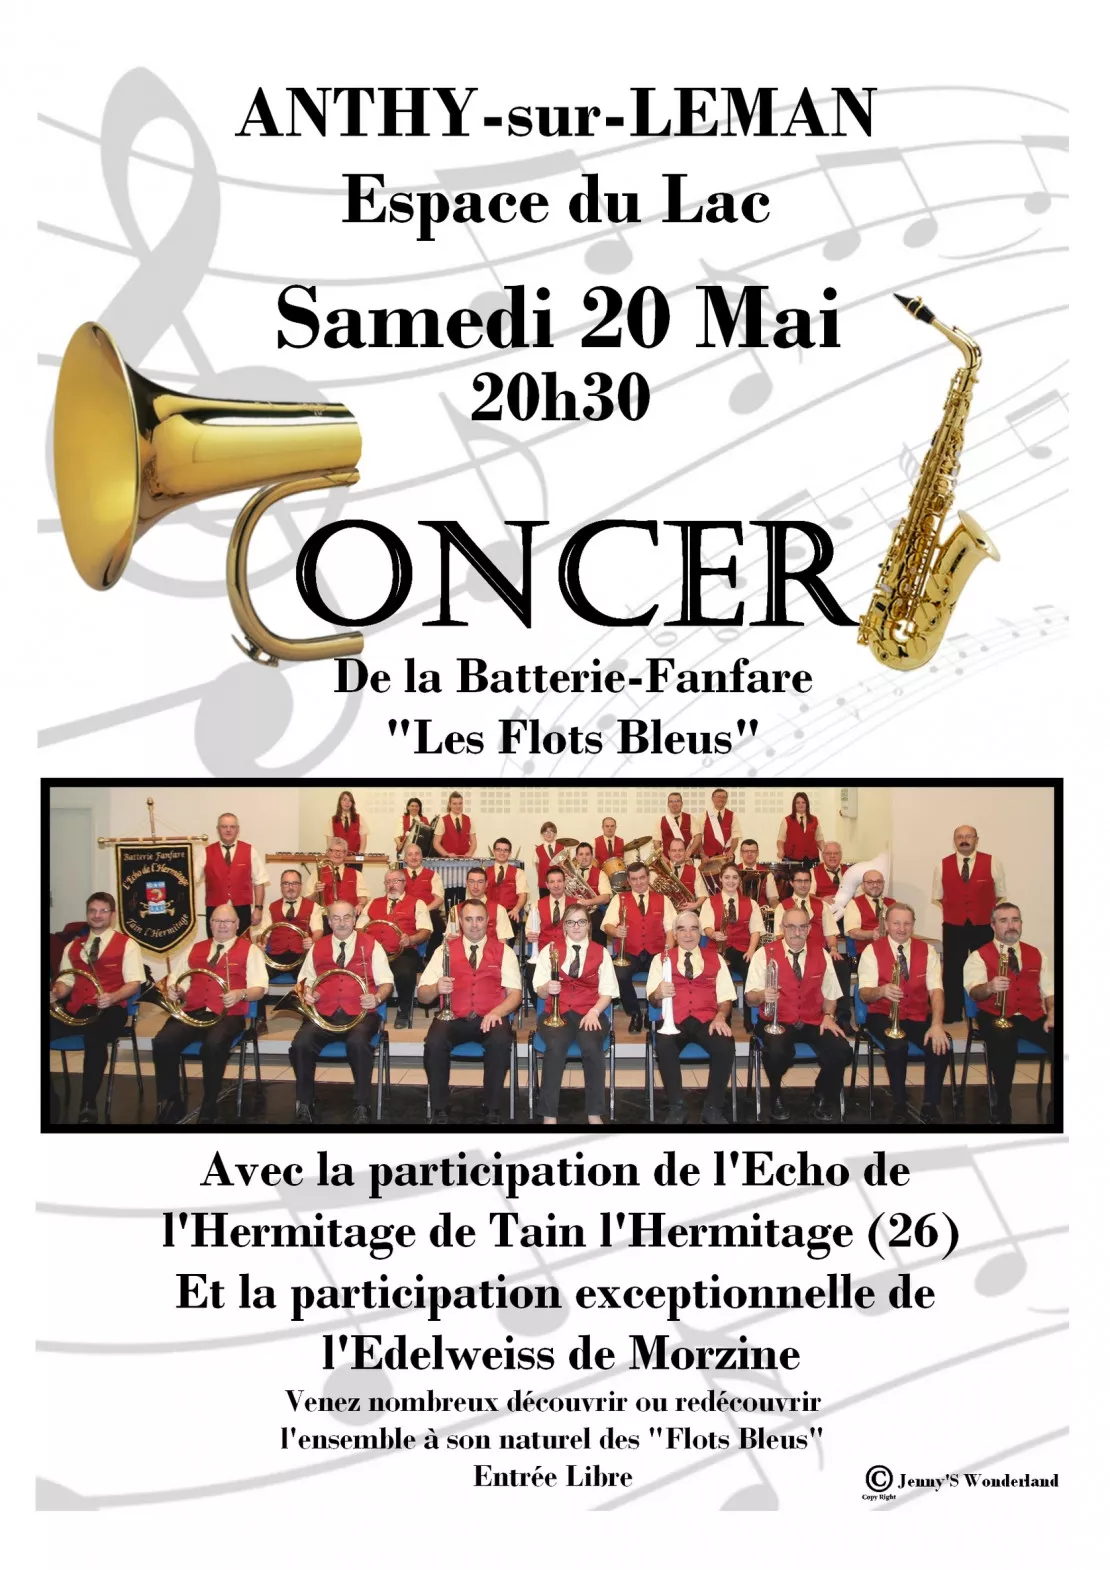 Concert de la batterie-fanfare "Les Flots Bleus" à Anthy-sur-Léman